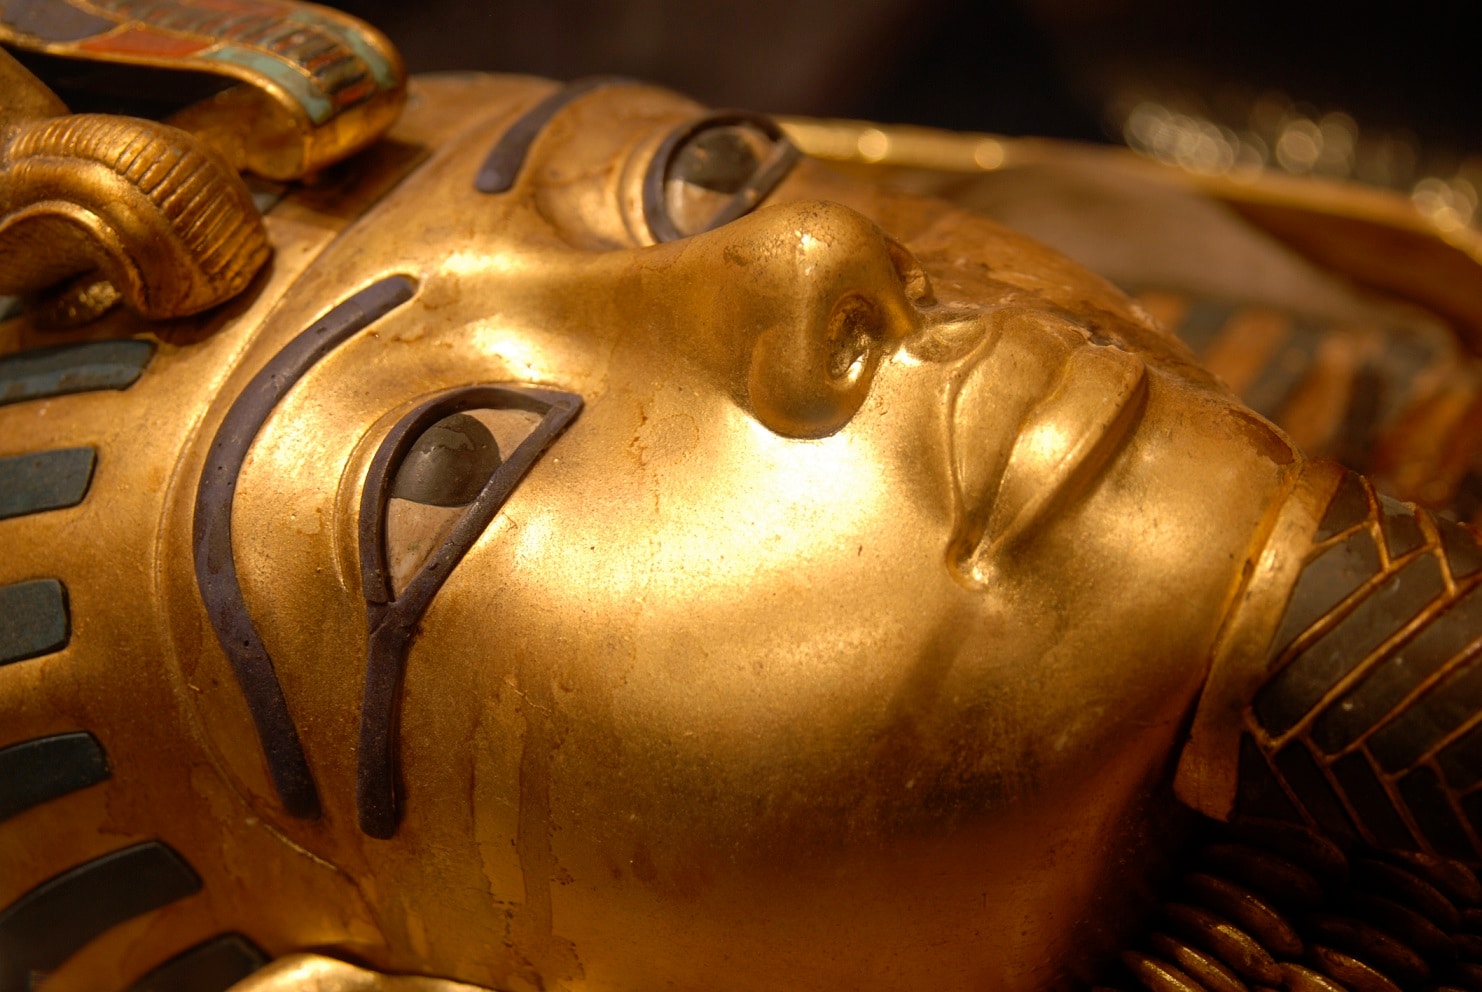 Storia di Tutankhamon: la vita, la morte e la maledizione